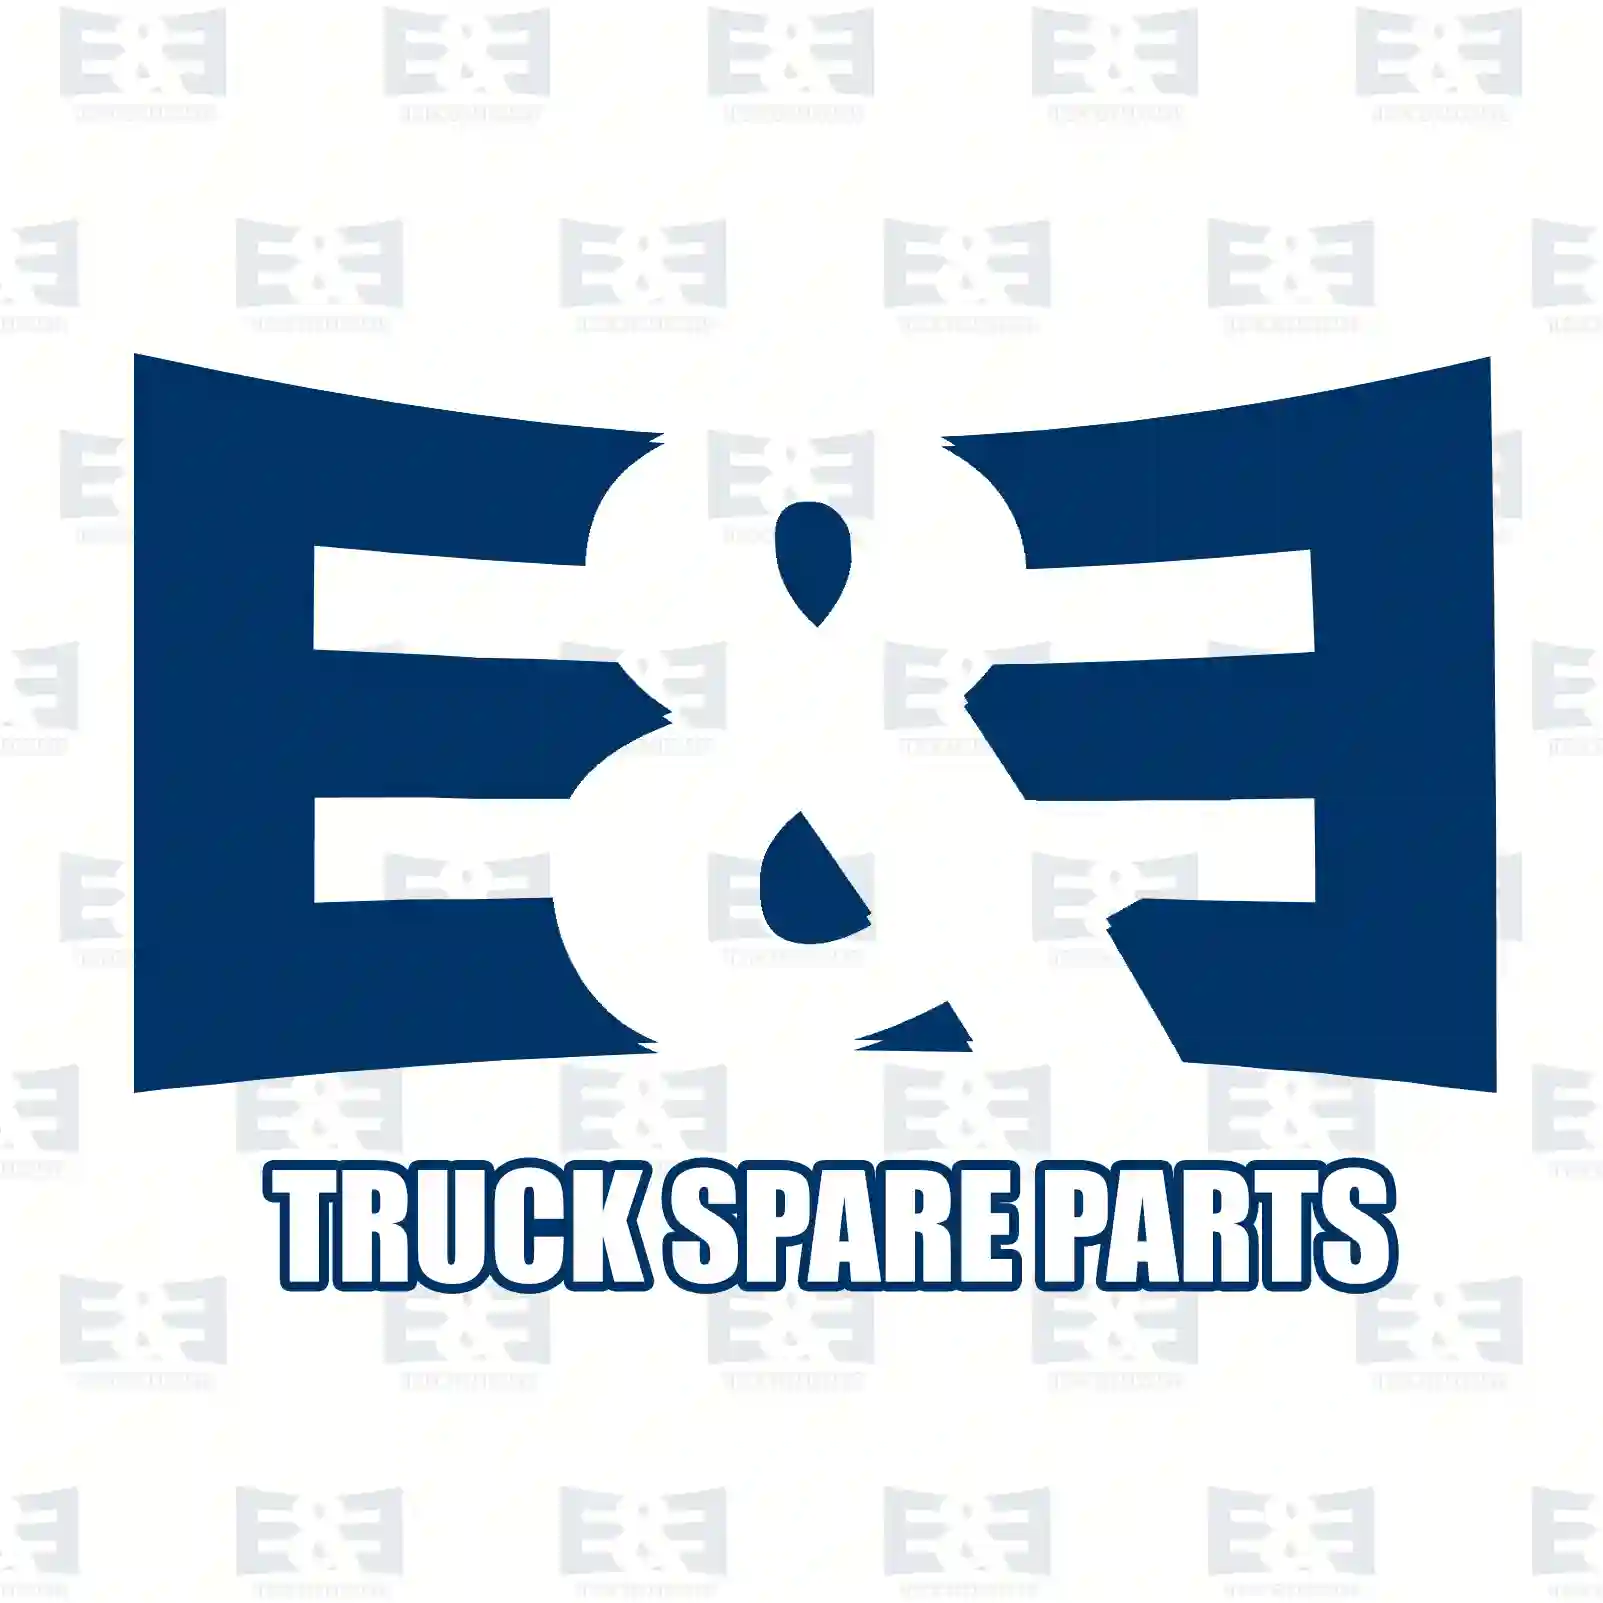 Nut, 2E2281111, 06110642316, 000934012004, 000934012009, 000934012013, 000934012022, 000934012023, 000934012034, 2023380072, 4342001580, 2V5803875AB, ZG41331-0008 ||  2E2281111 E&E Truck Spare Parts | Truck Spare Parts, Auotomotive Spare Parts Nut, 2E2281111, 06110642316, 000934012004, 000934012009, 000934012013, 000934012022, 000934012023, 000934012034, 2023380072, 4342001580, 2V5803875AB, ZG41331-0008 ||  2E2281111 E&E Truck Spare Parts | Truck Spare Parts, Auotomotive Spare Parts